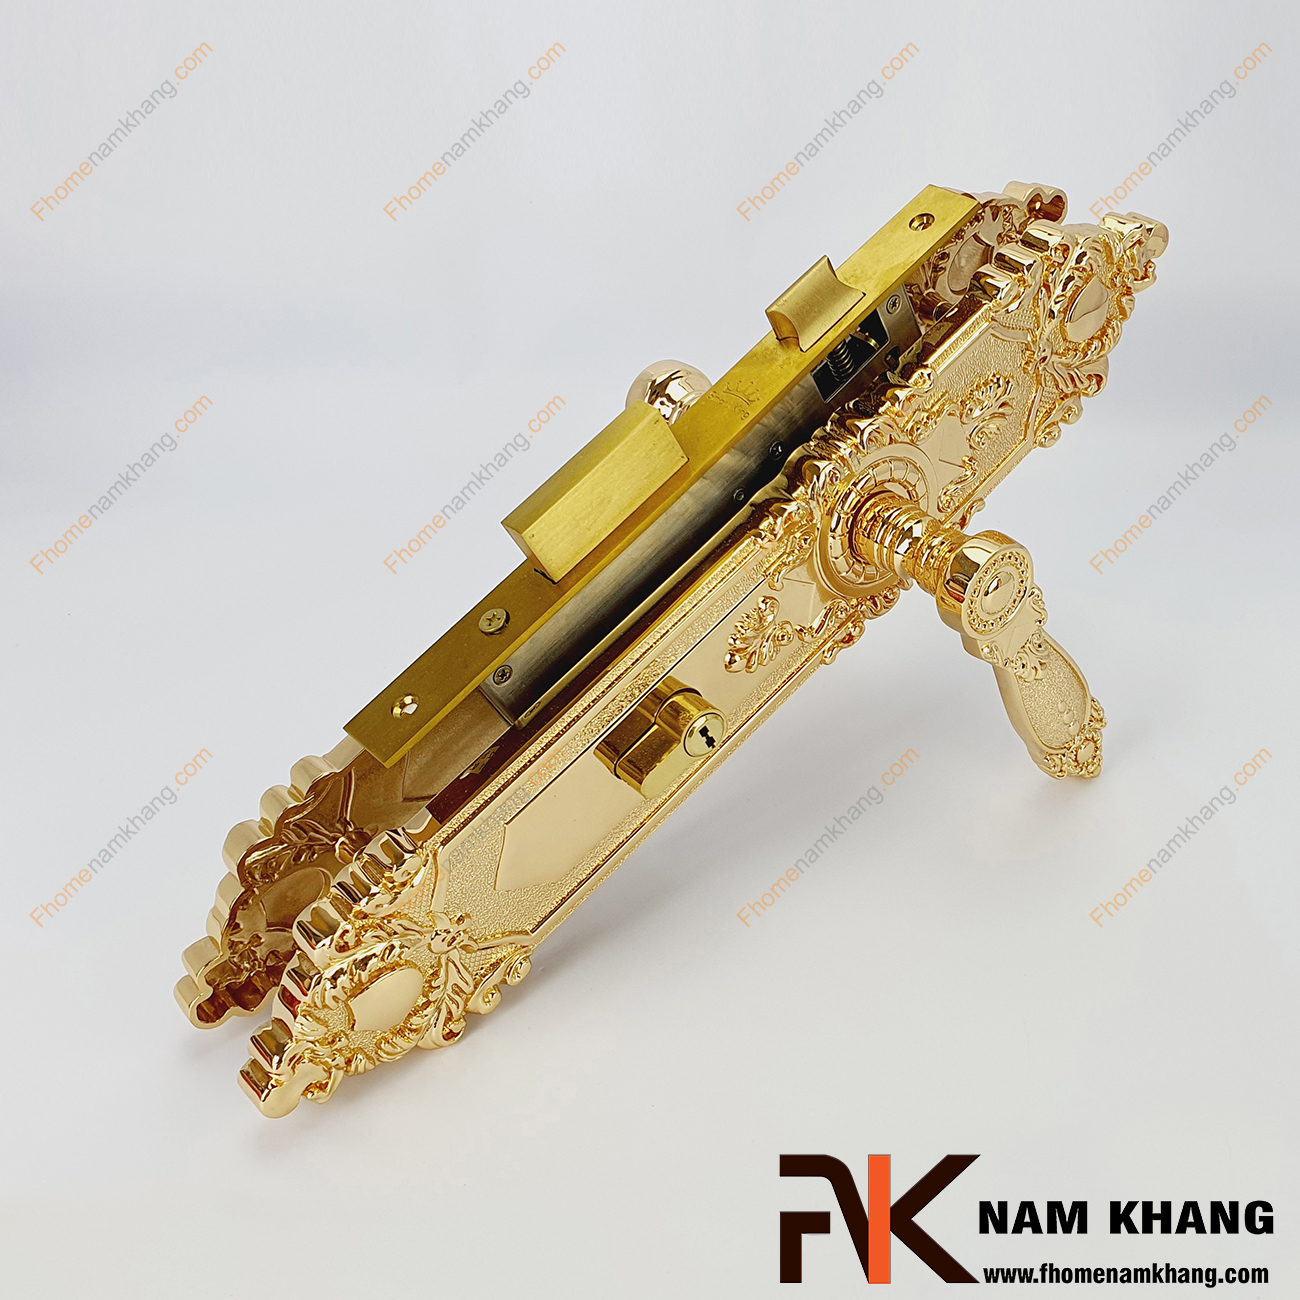 Khóa cửa chính cổ điển màu đồng vàng NK186L-24K là bộ sản phẩm khóa loại lớn chuyên dùng cho các dạng cửa sảnh, cửa chính, cửa 2 cánh, 4 cánh,...